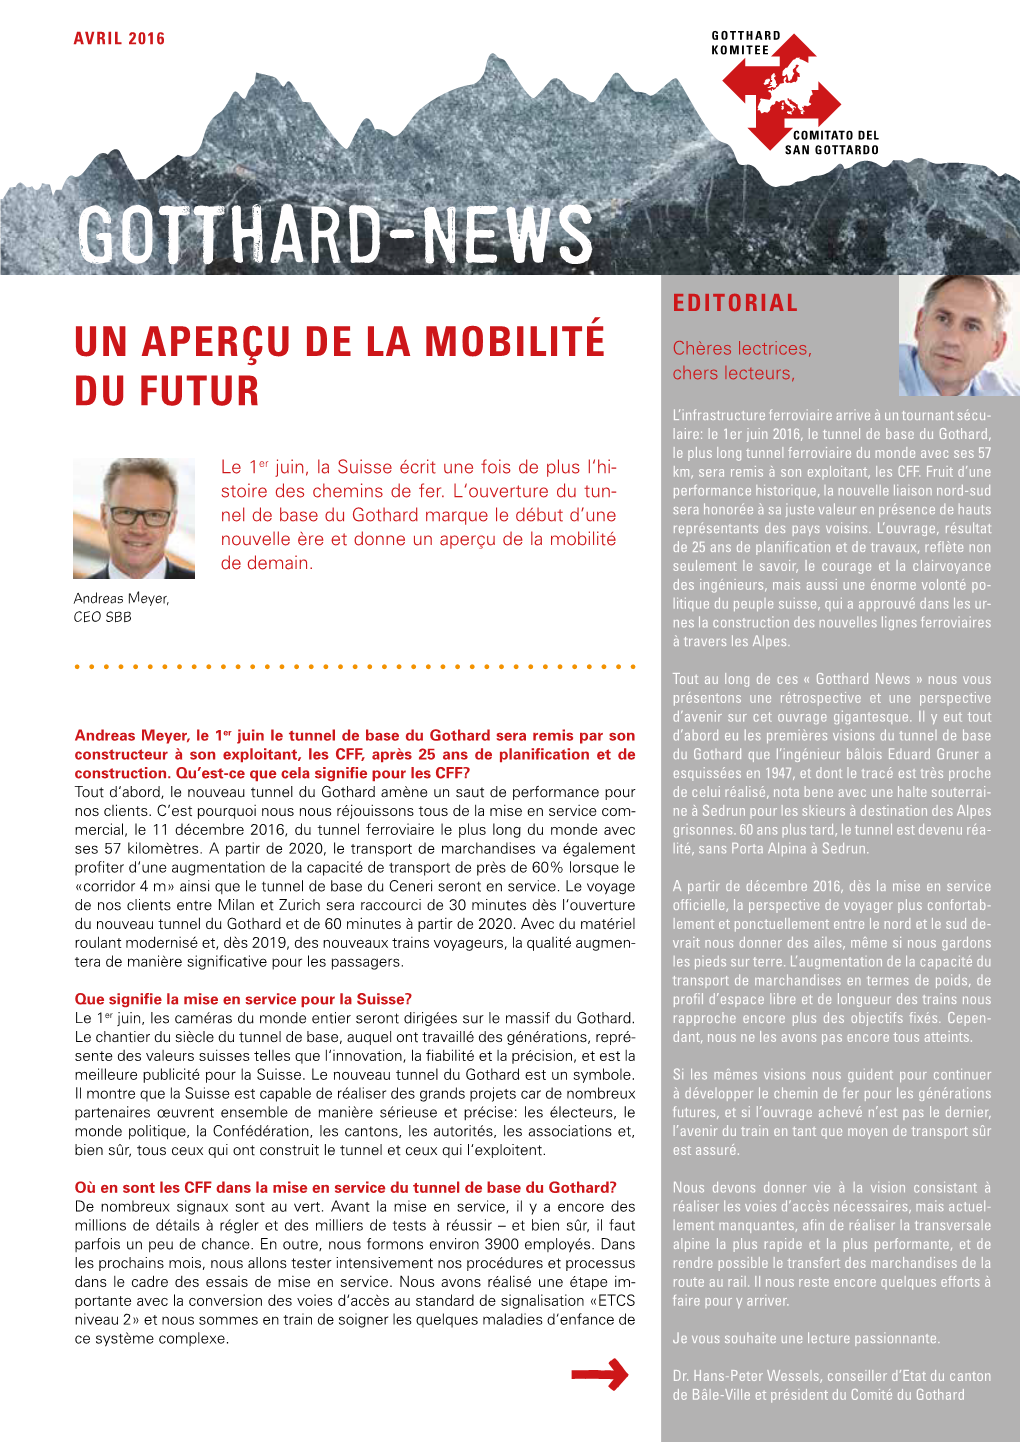 Gotthard-News →